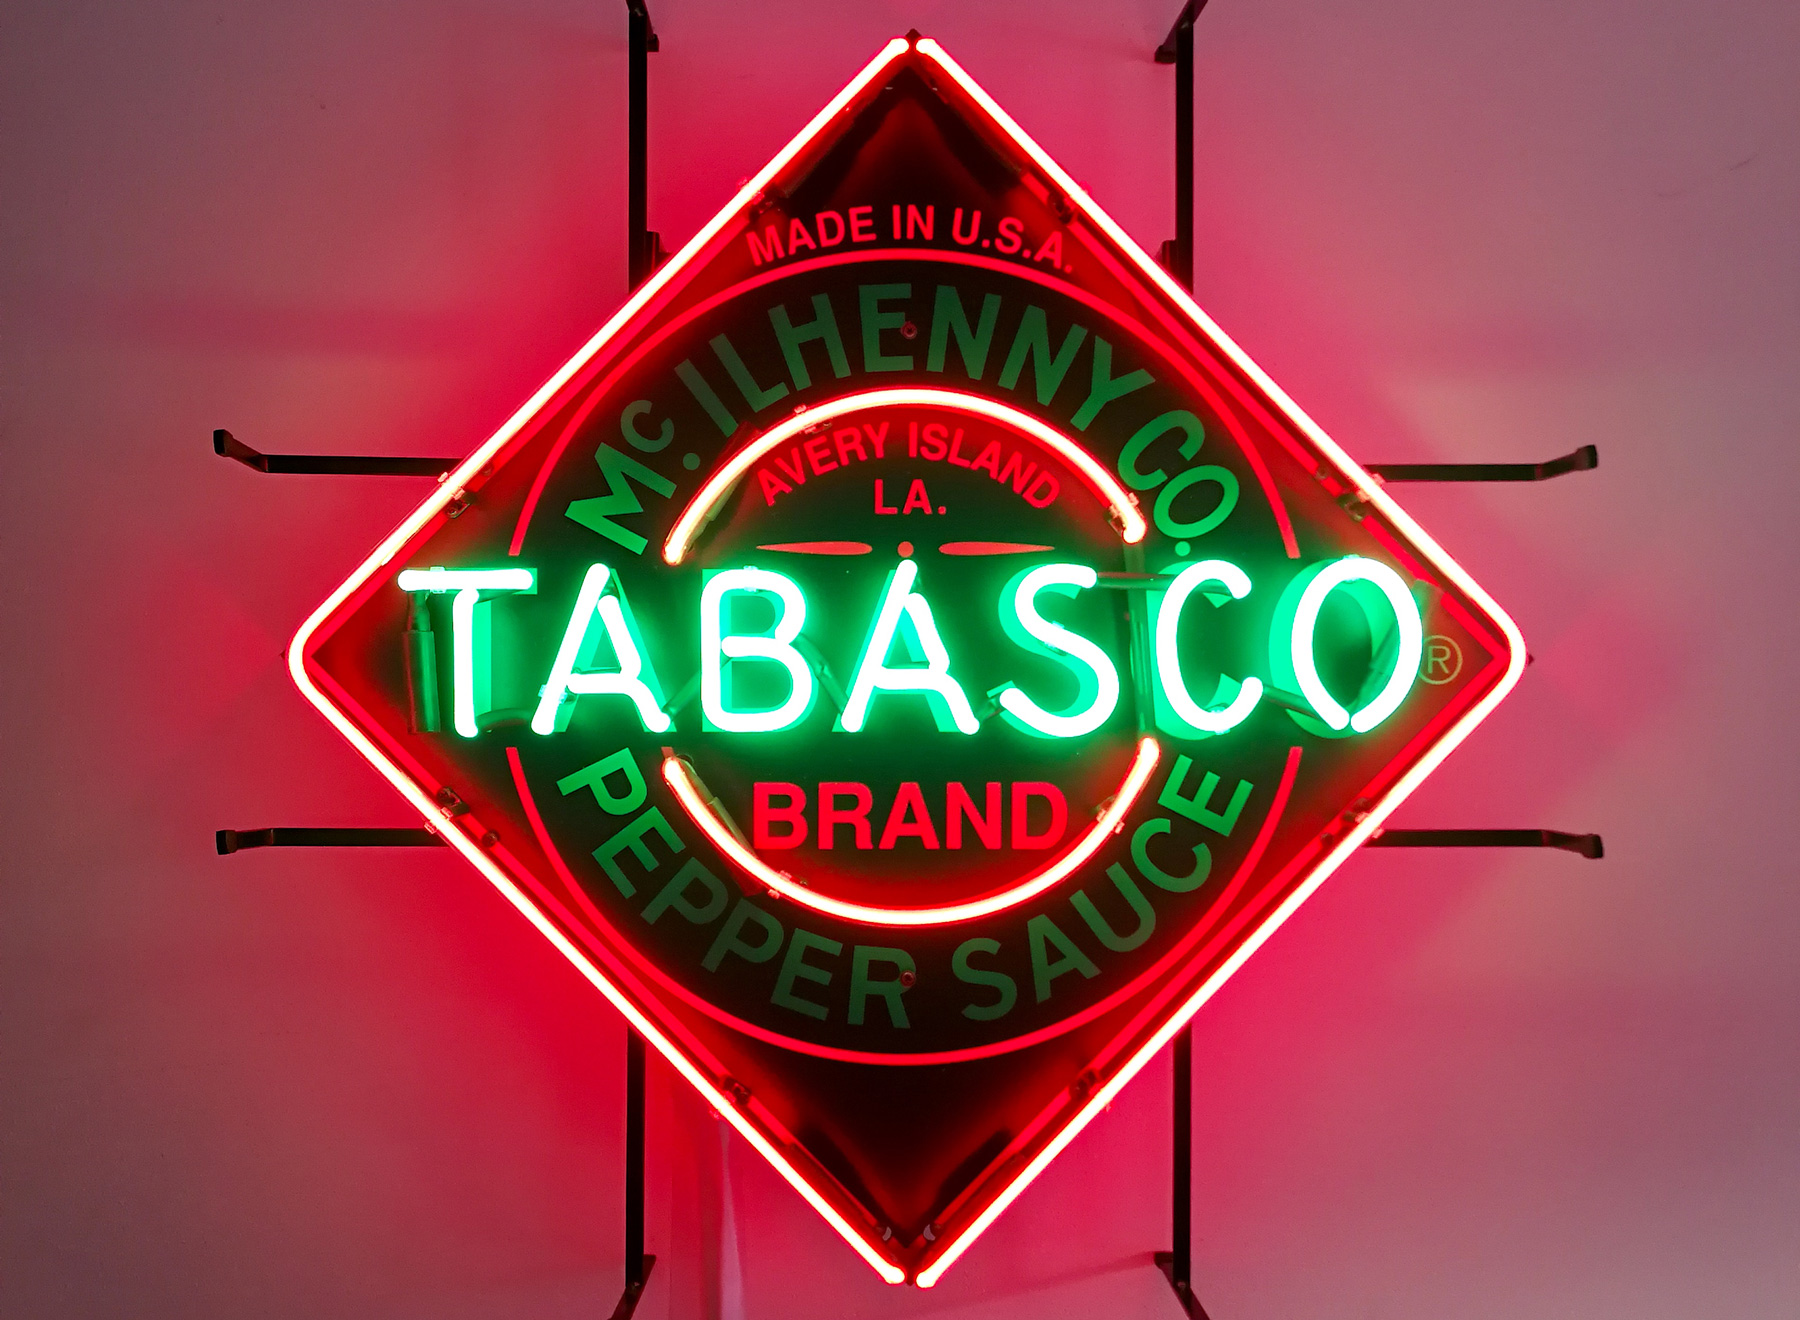 Herzlichen Glückwunsch zum runden Geburtstag! 150 Jahre Tabasco (Gewinnspiel)